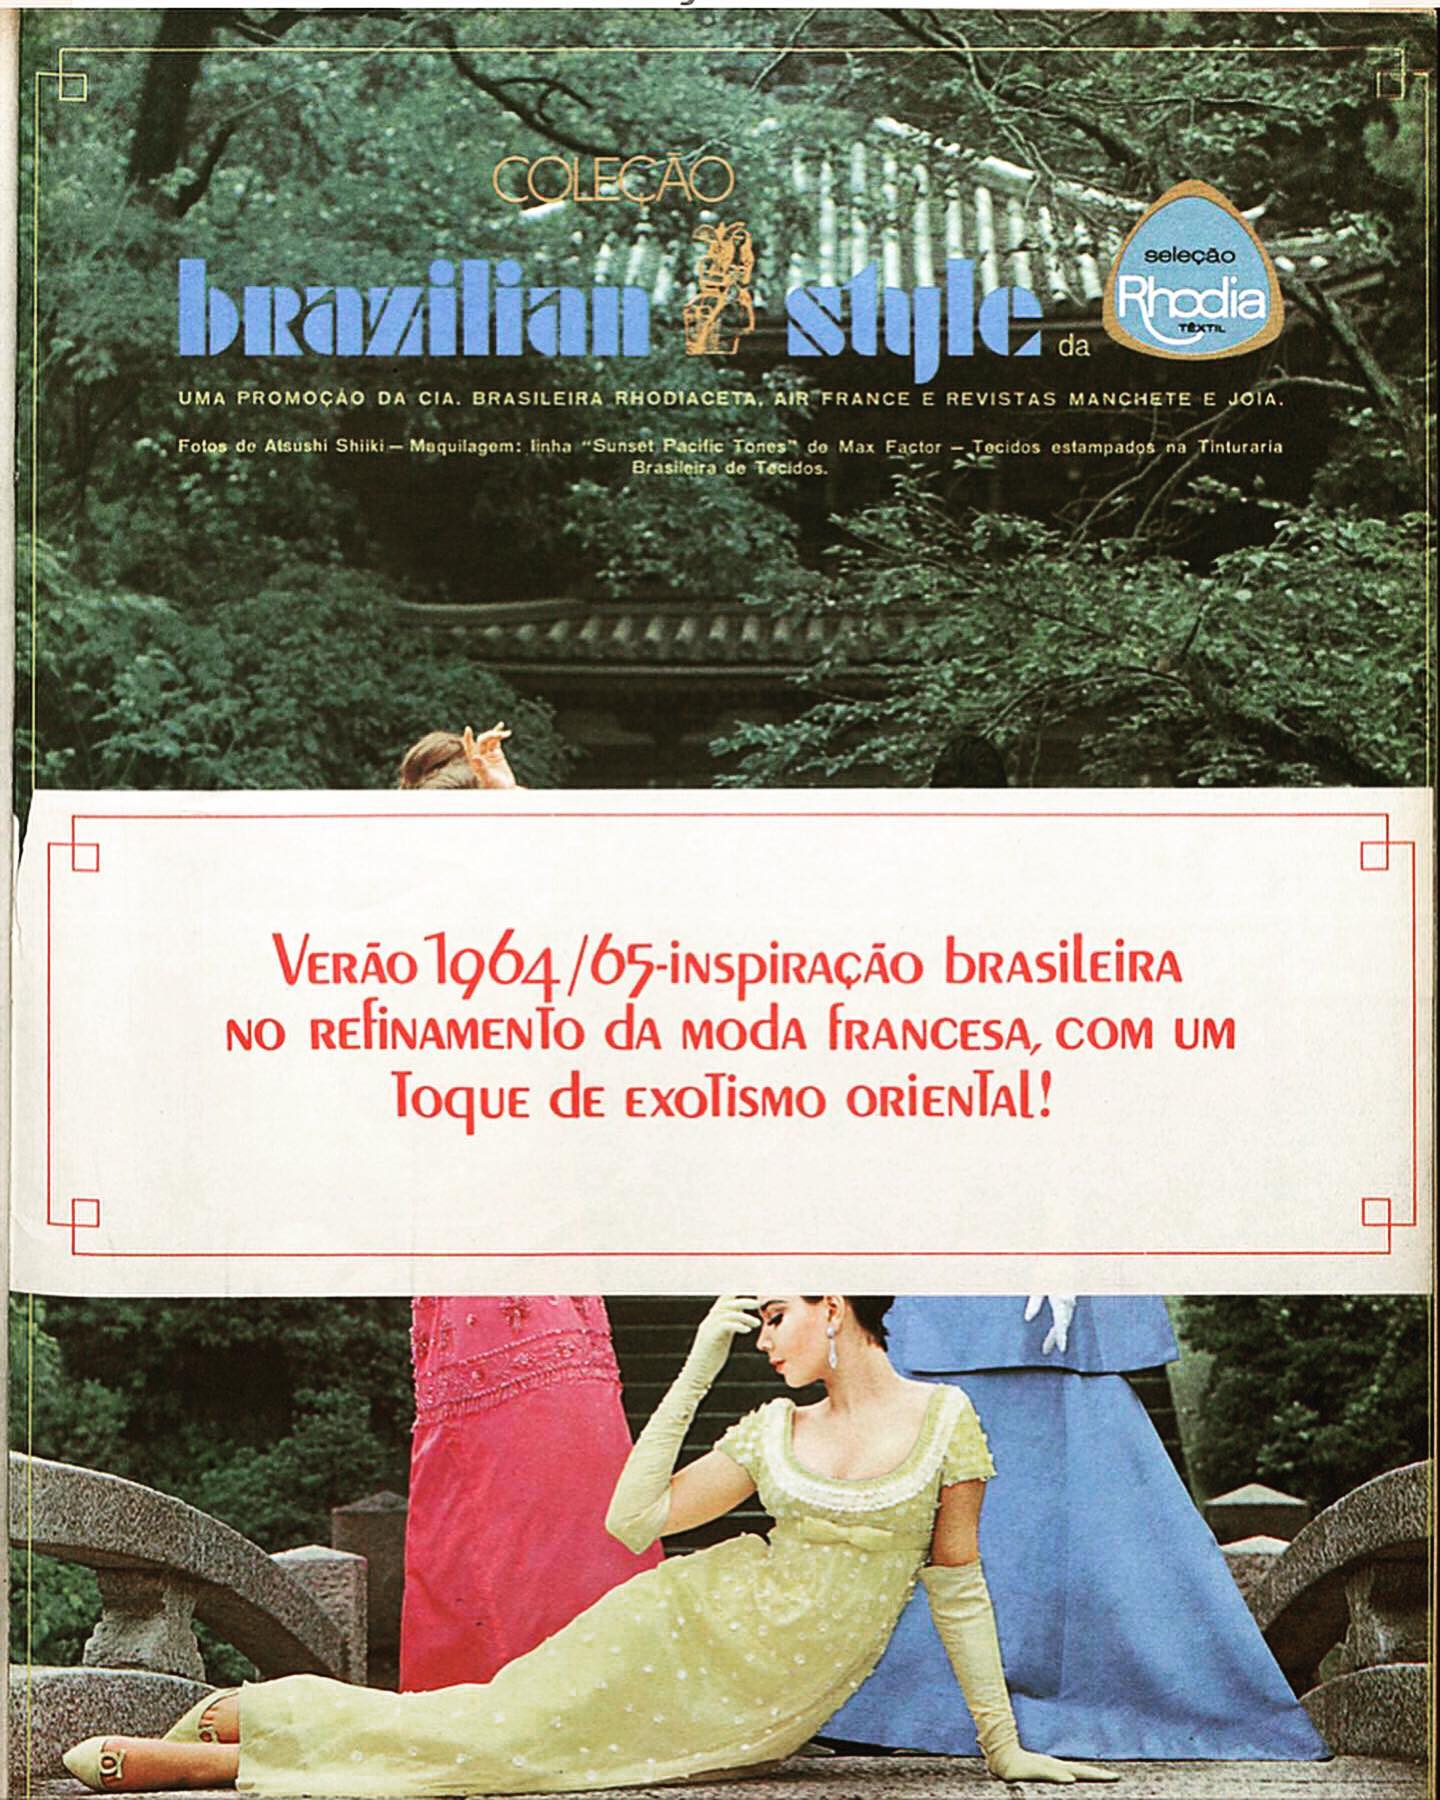 Publicidade da coleção "Brazilian Style" da Rhodia. 